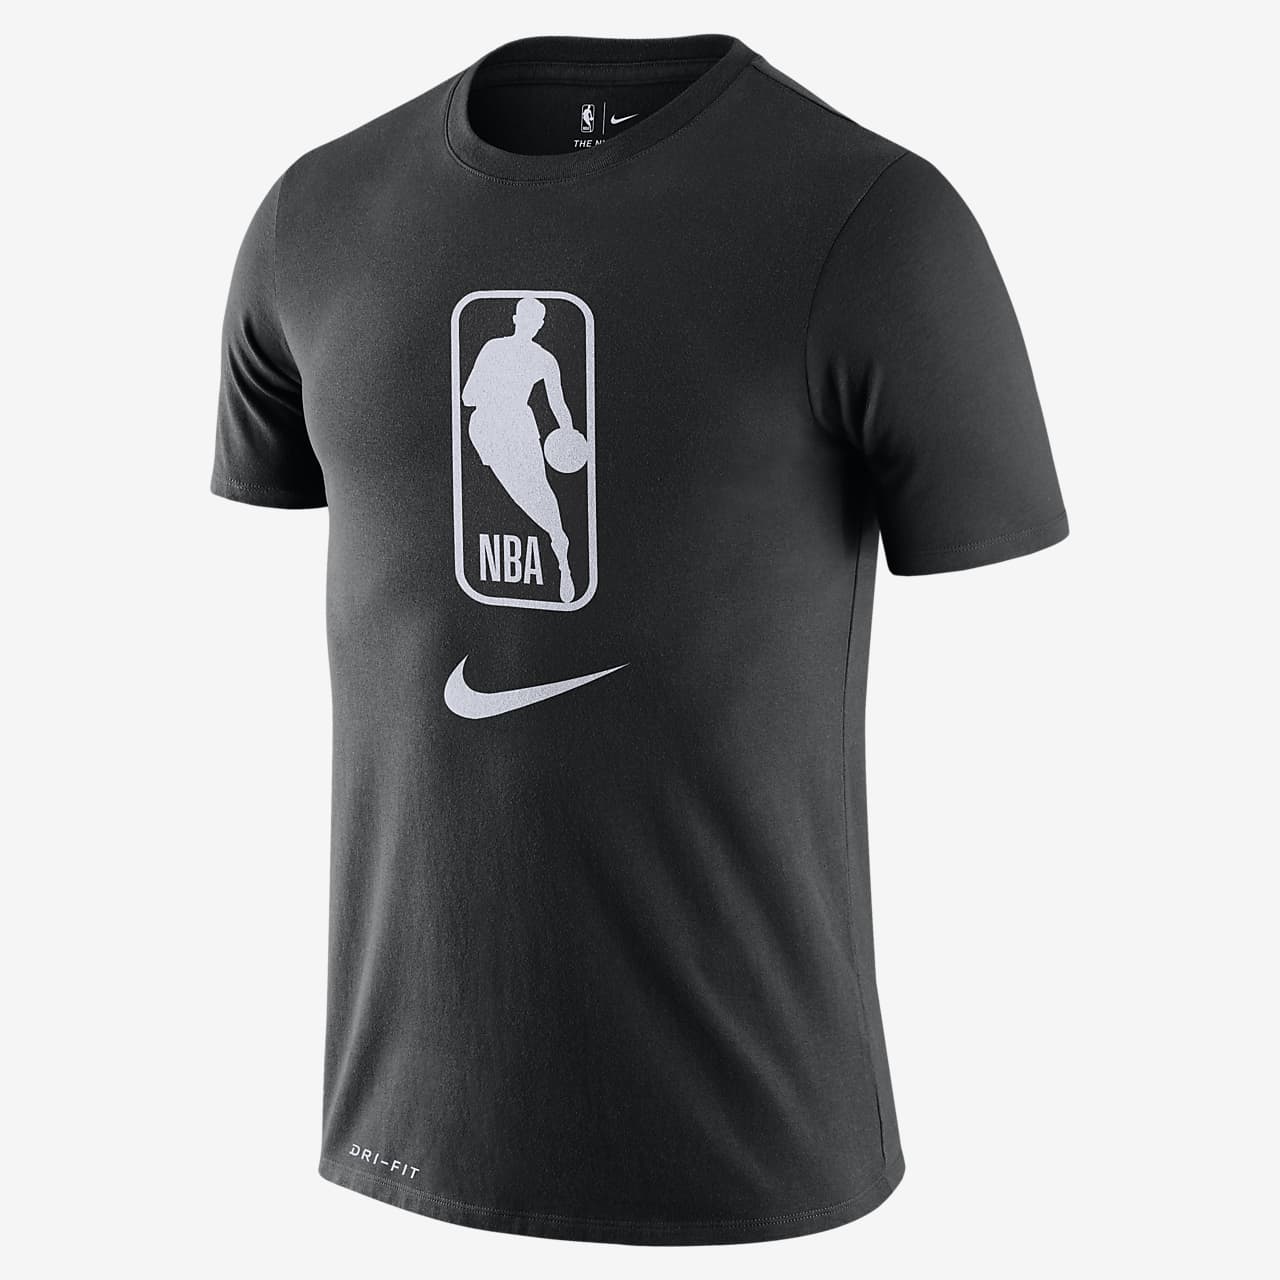 Team 31 Camiseta Nike Dri-FIT de la NBA - Hombre